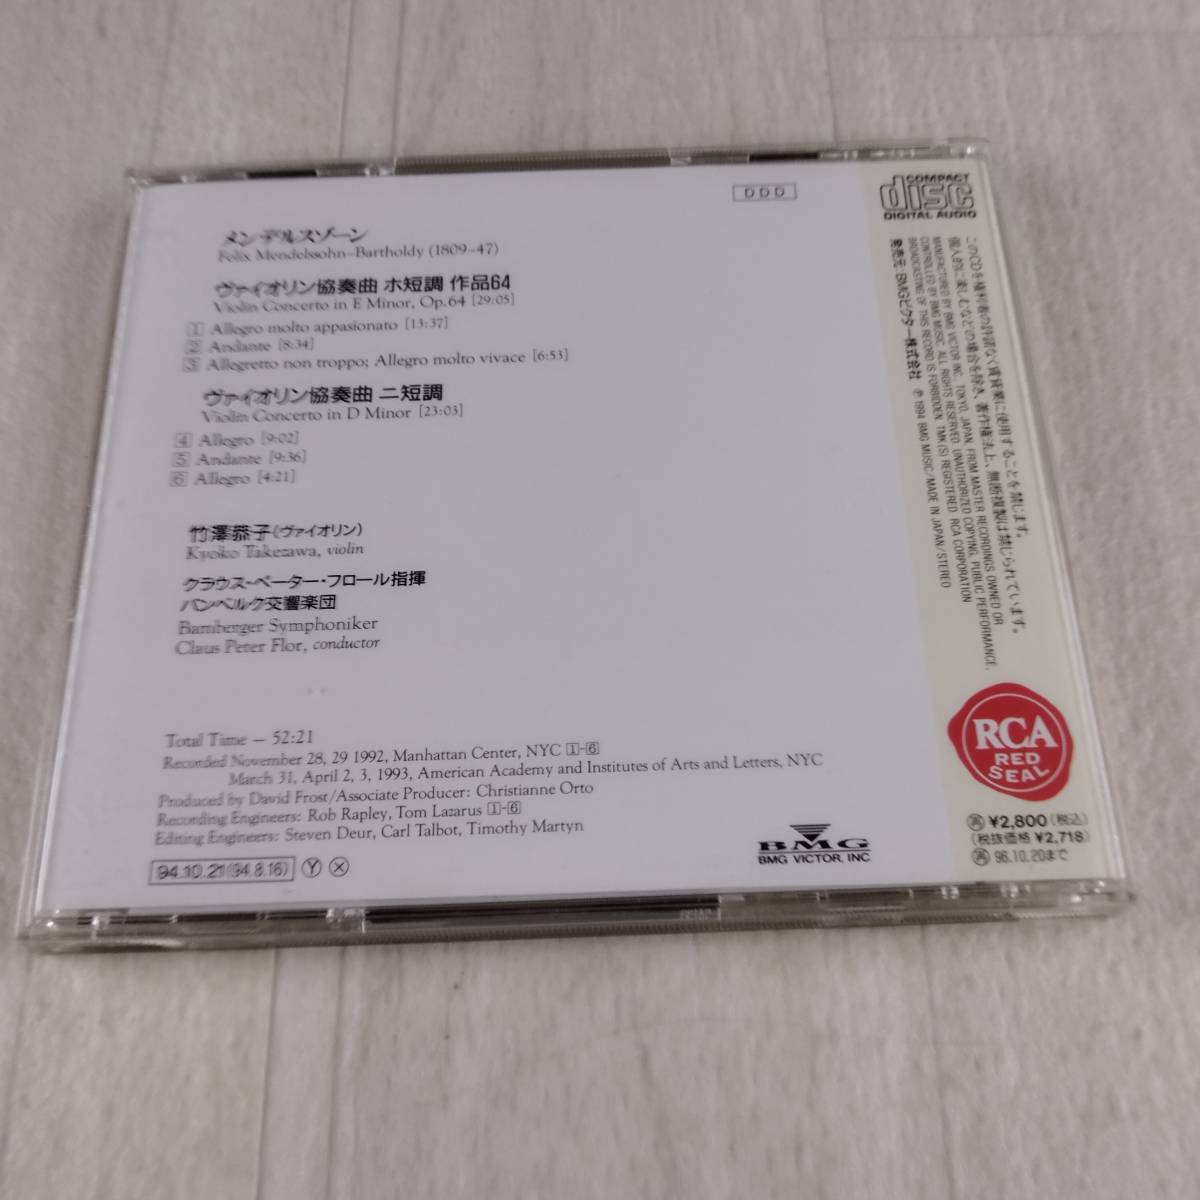 1MC1 CD 竹澤恭子 クラウス・ペーター・フロール バンベルク交響楽団 メンデルスゾーン ヴァイオリン_画像2